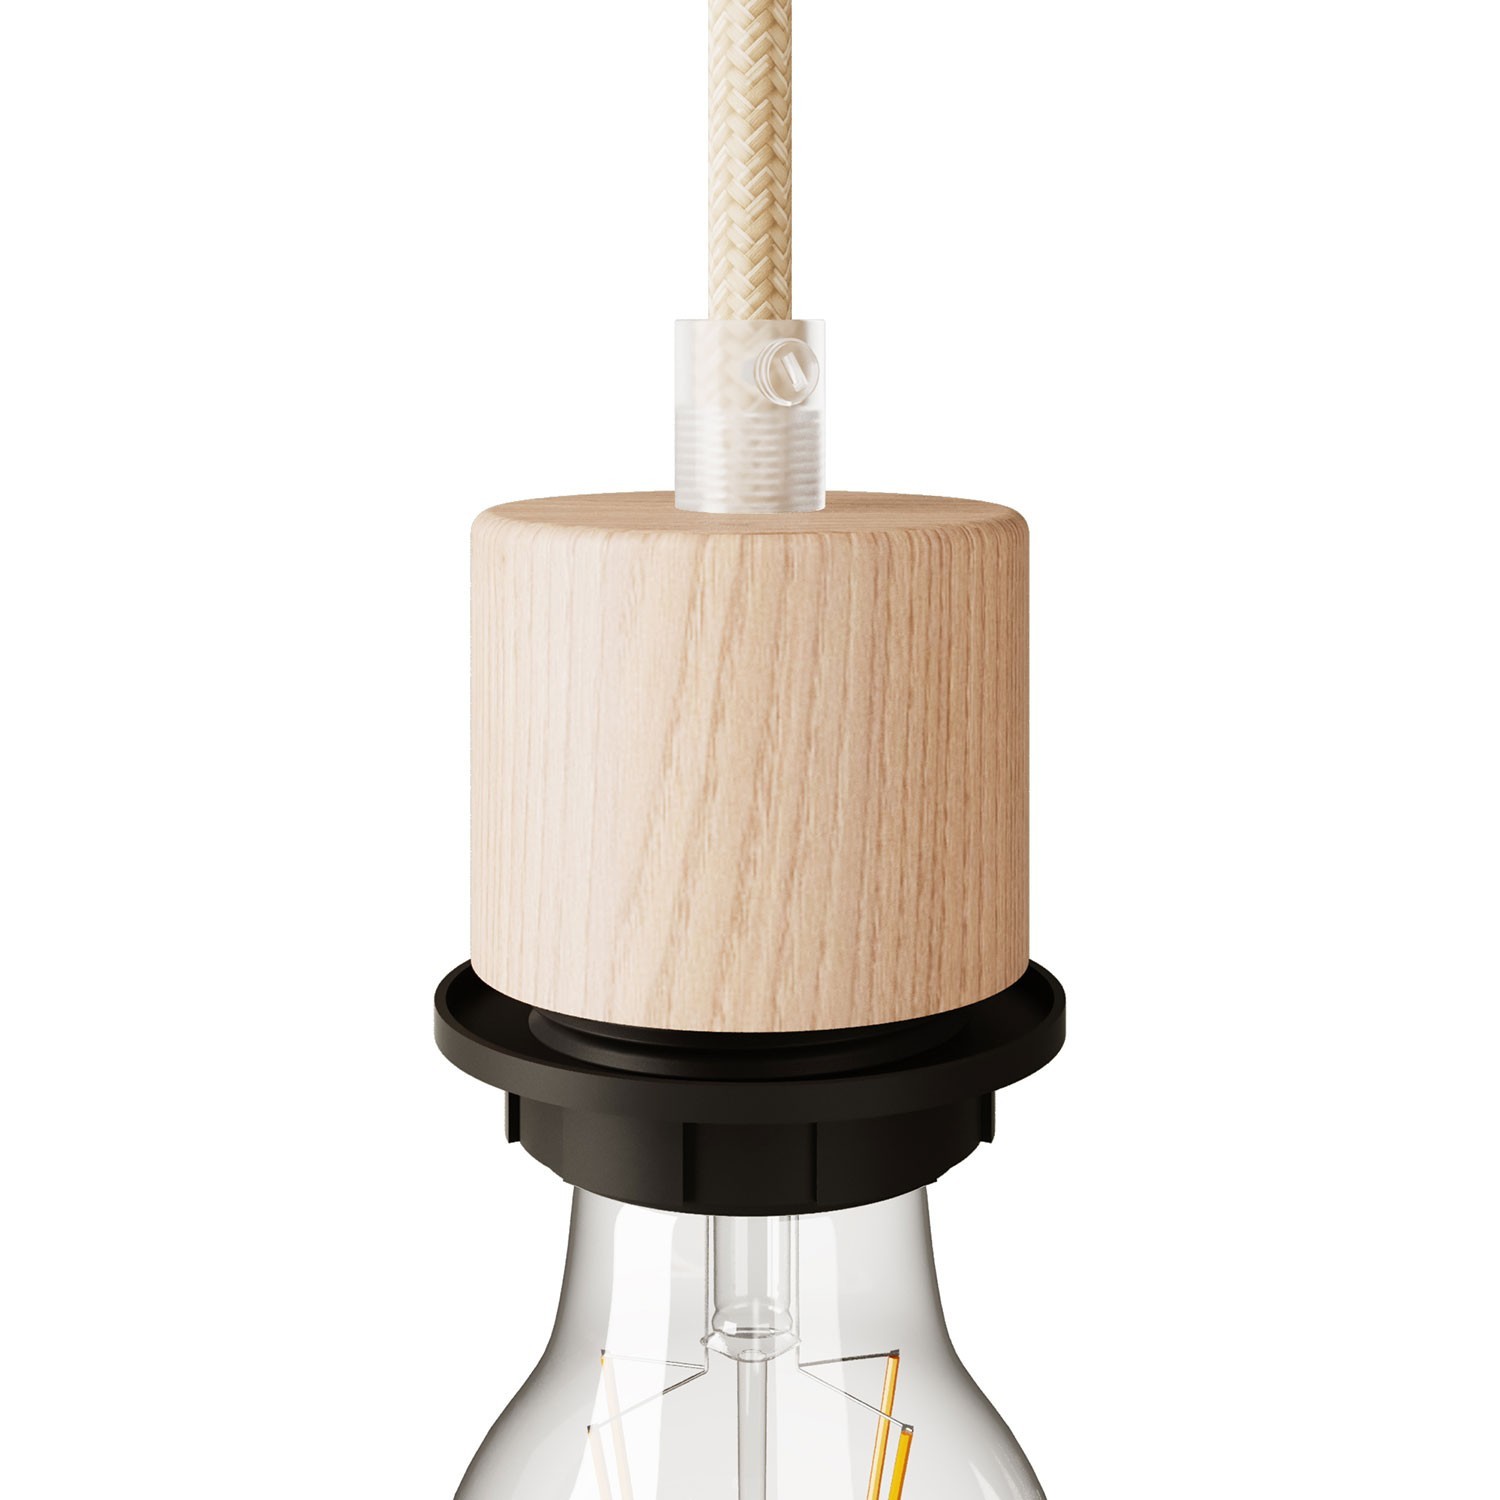 Houten E27 cilindrische lamphouder met schroefdraad en kabelklem voor lampenkap